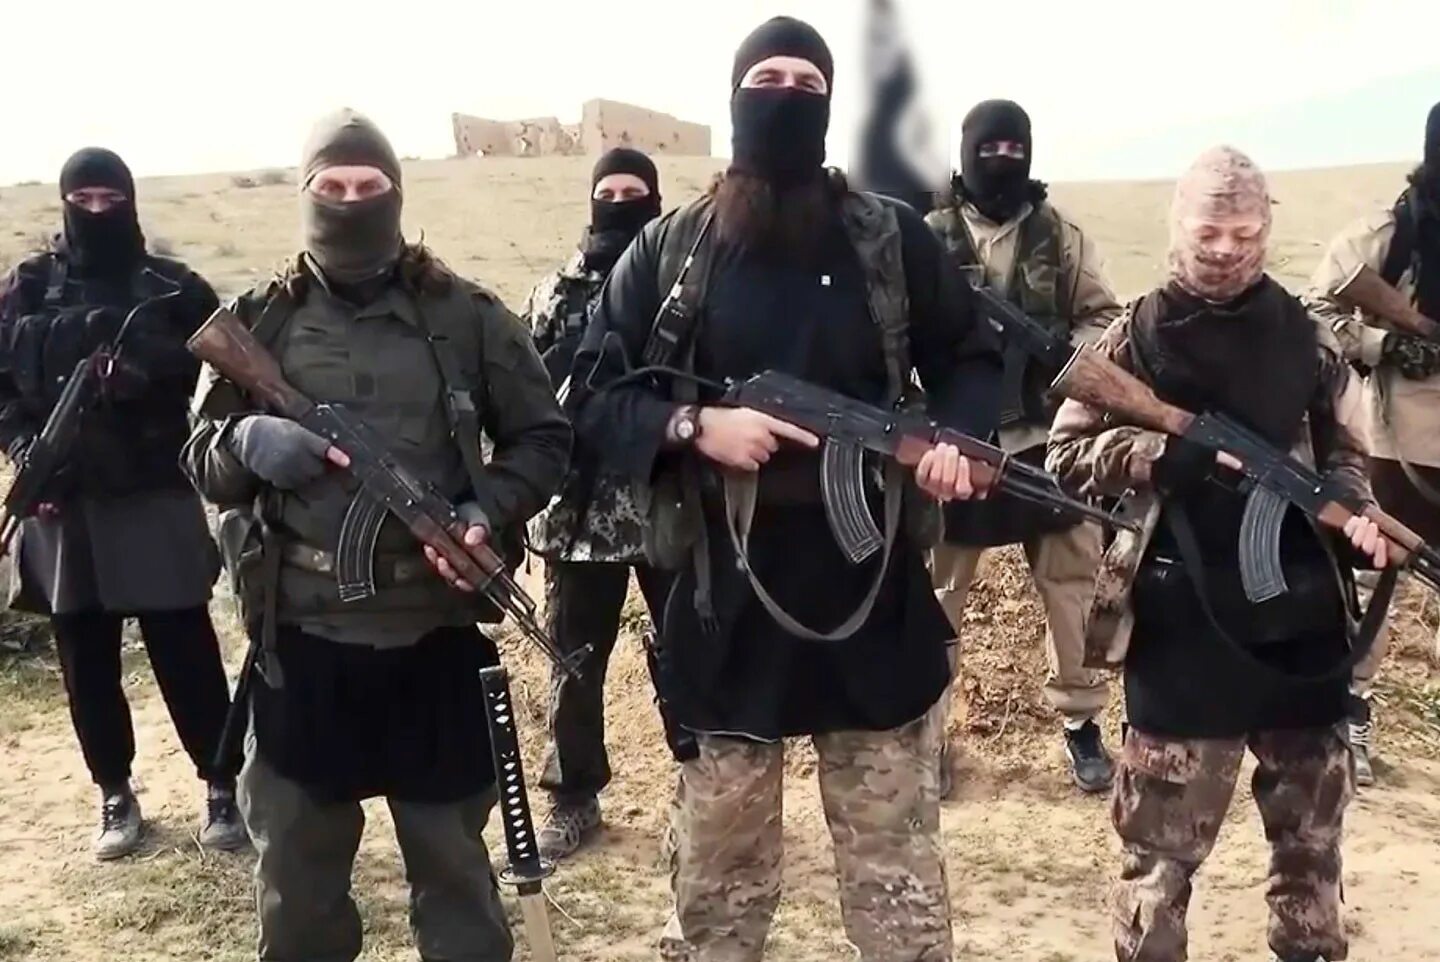 Террористическая группировка «Исламское государство» в Сирии. Исламское государство Ирака и Сирии. Ликвидация Абу джихада. А где пятый террорист